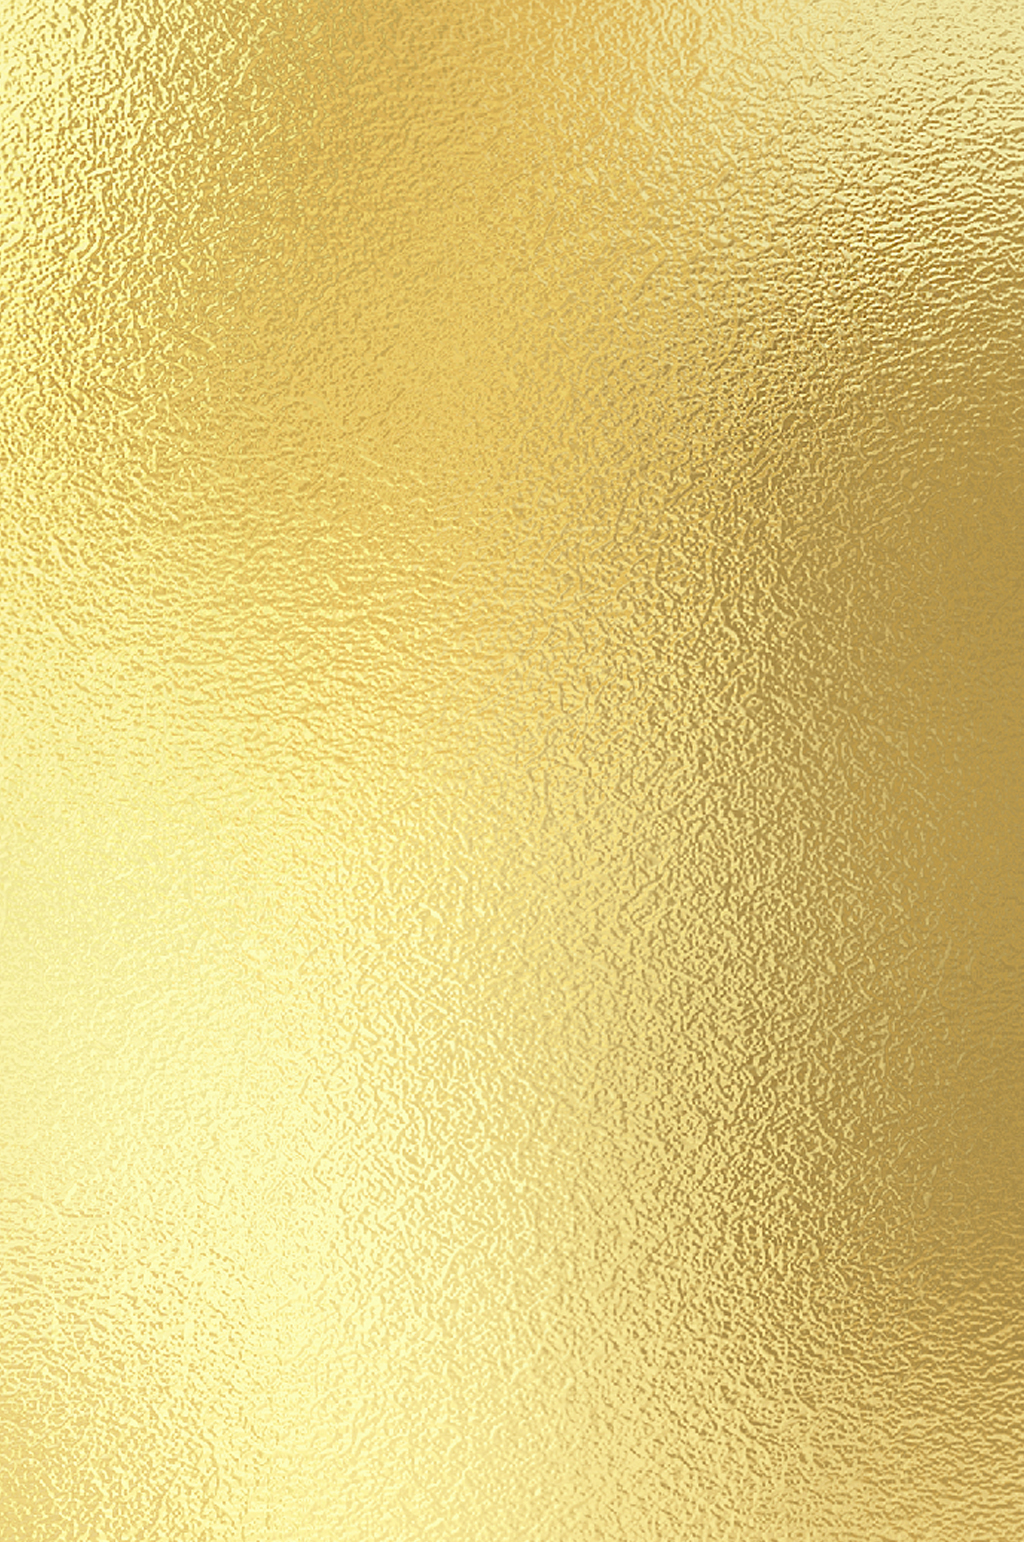 金色金粉背景图片